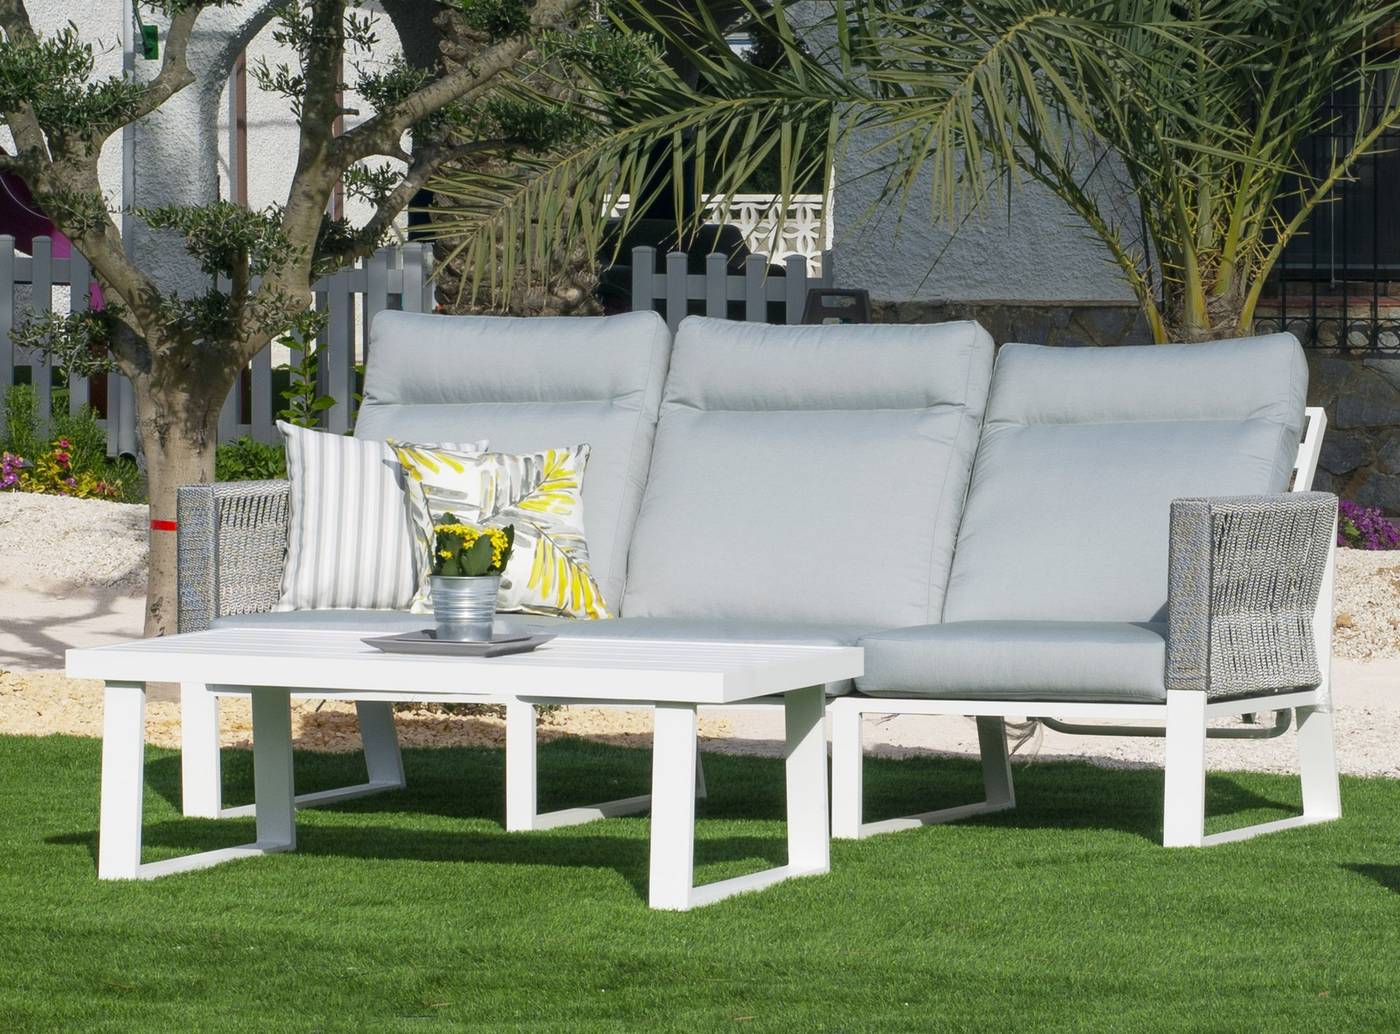 Sofá relax 3 plazas lujo, con respaldos reclinables. Fabricado de aluminio y cuerda en color blanco, gris, marrón o champagne.